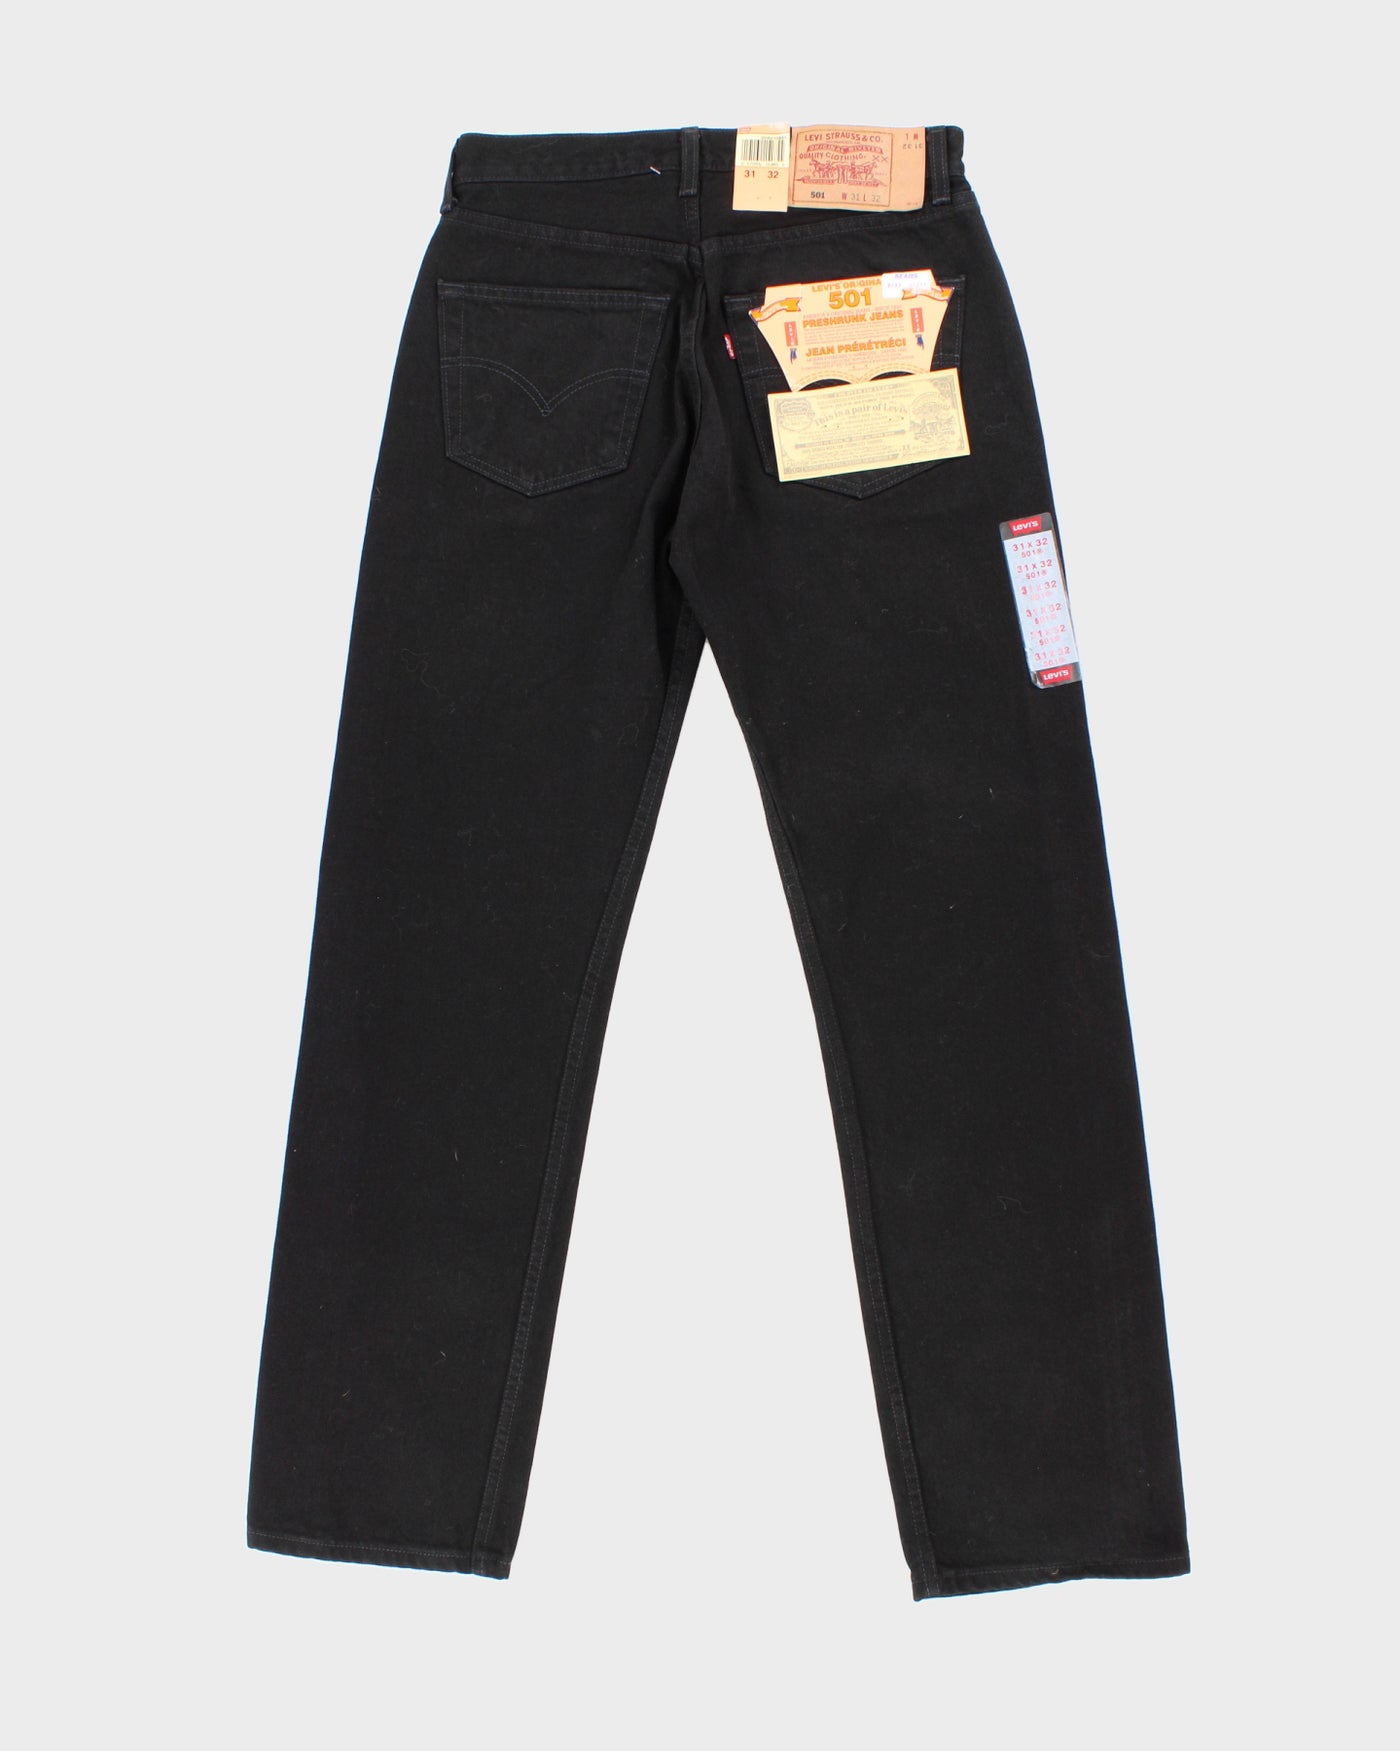 Vintage 90s Levi's Black Denim 501 Jeans - W31 L32